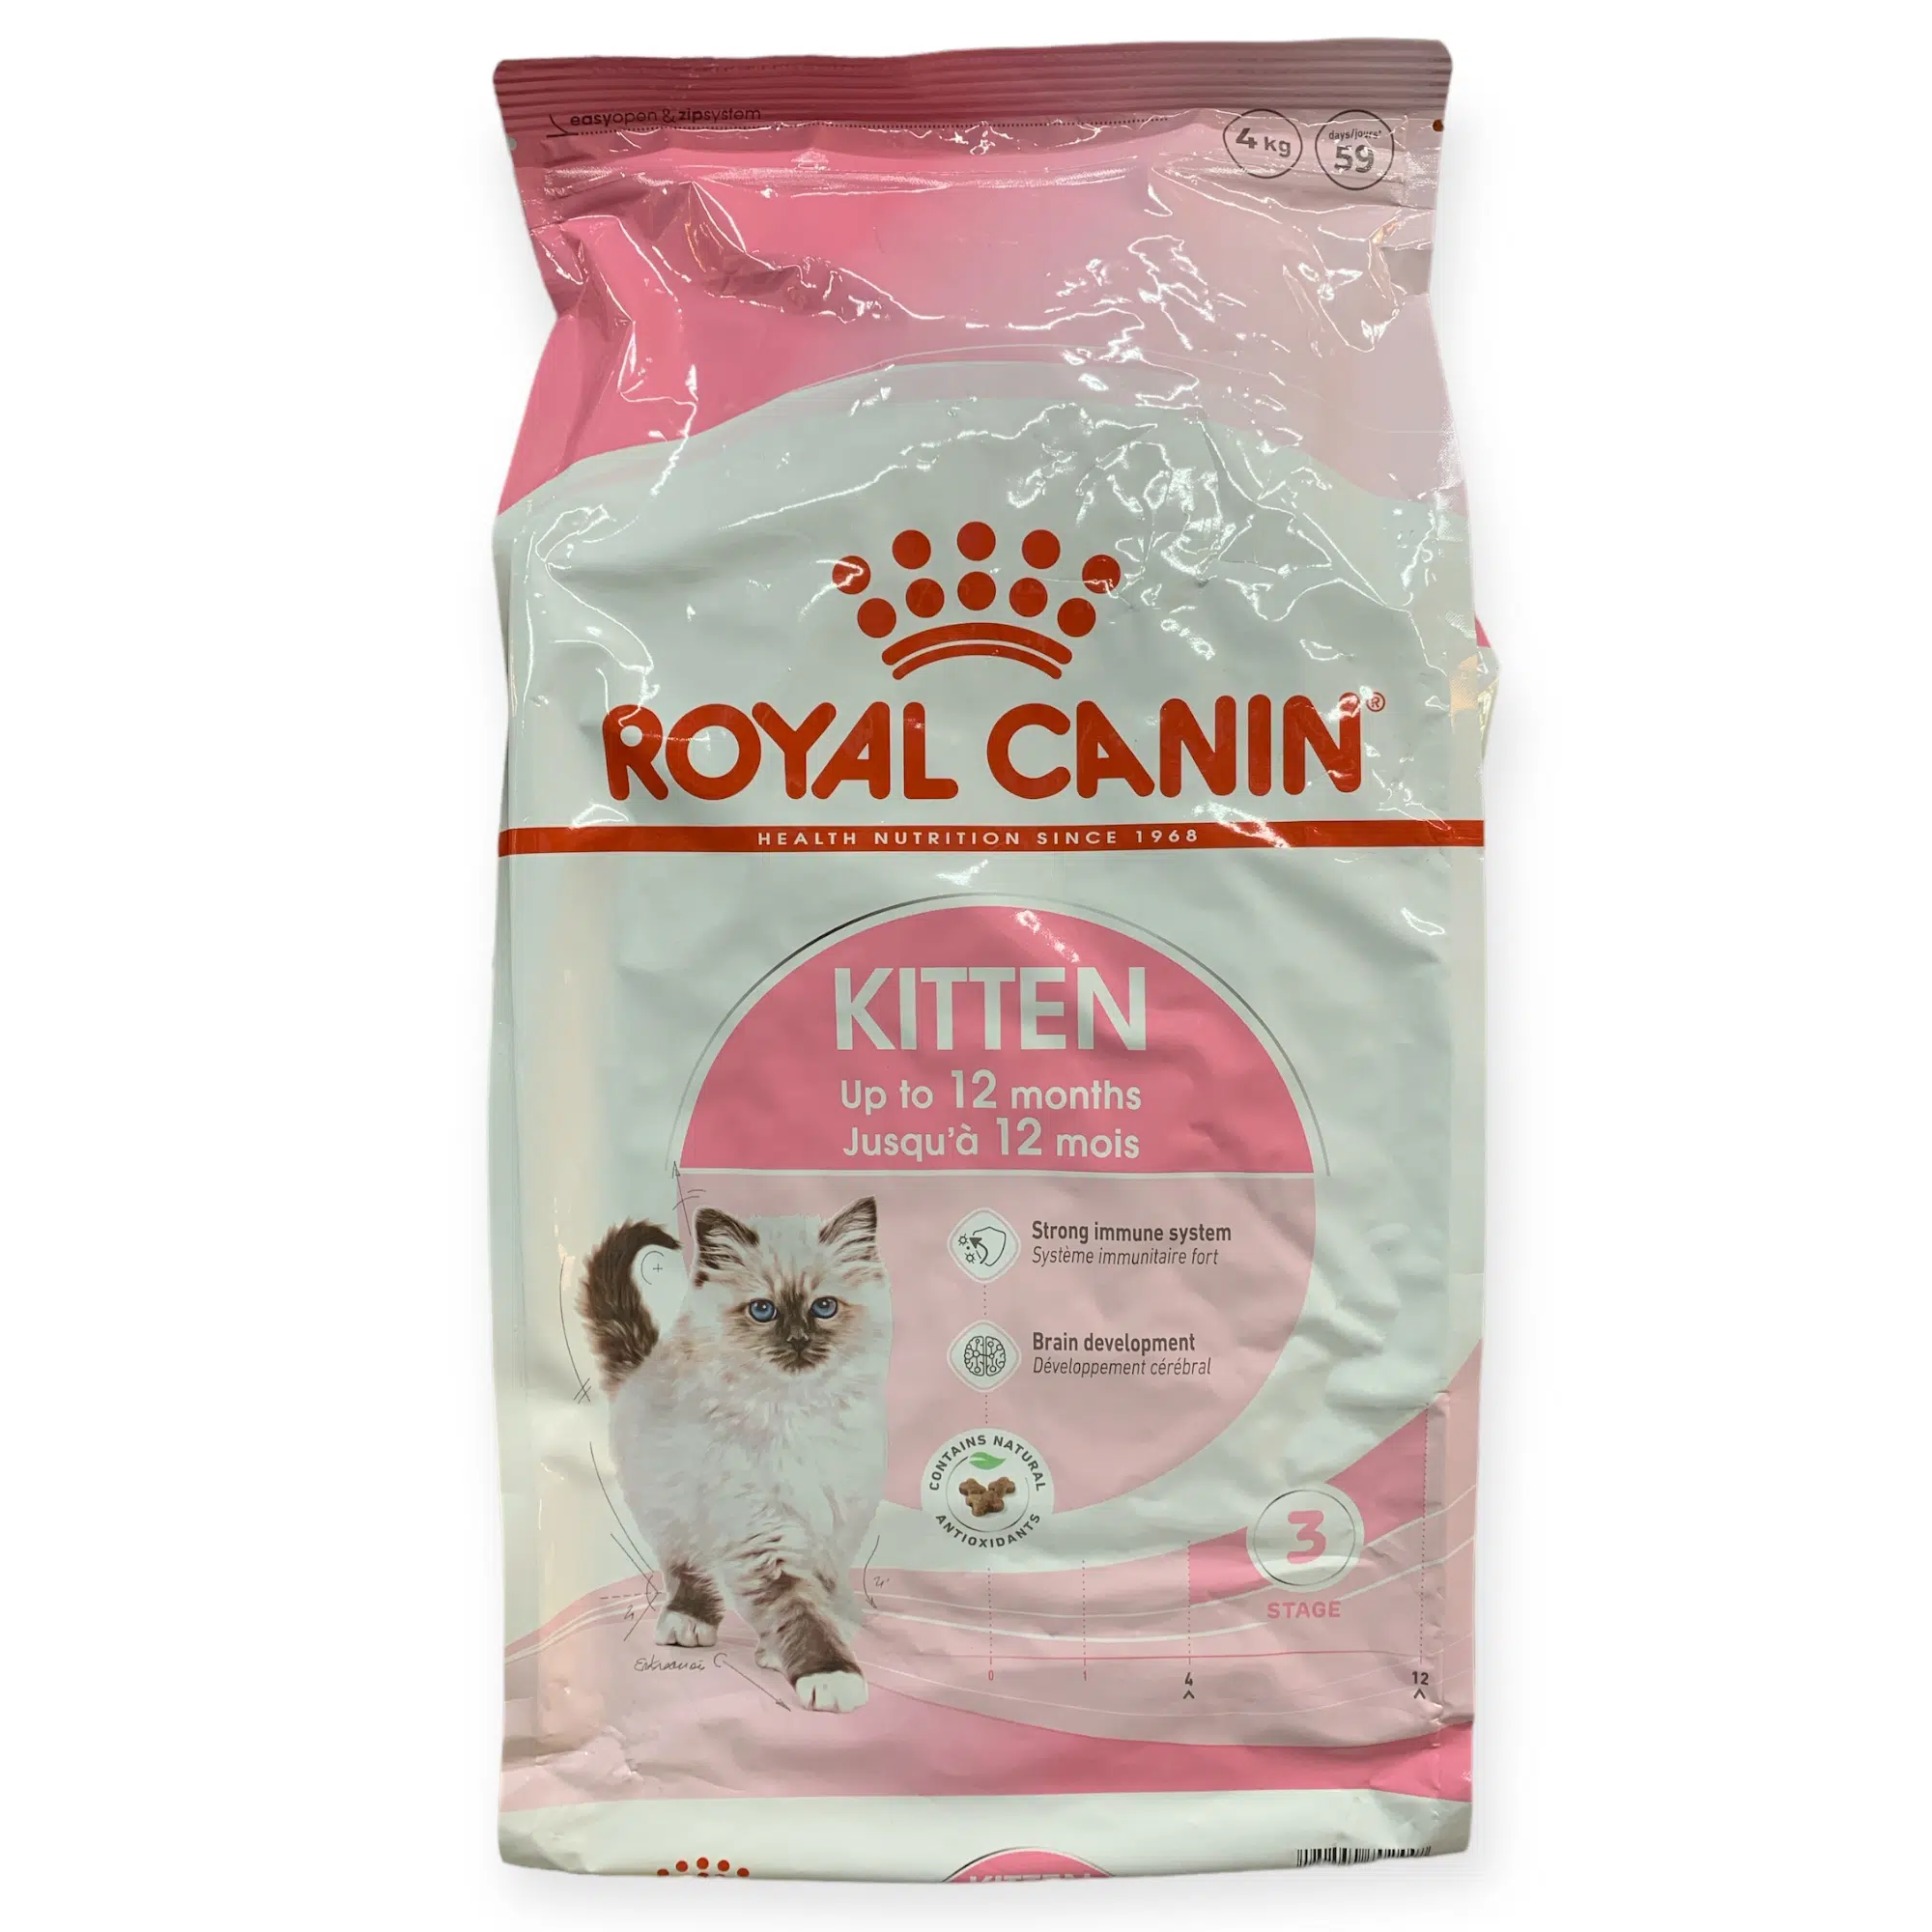 רויל קנין תזונה מלאה לגורי חתולים, 4 קילוגרם